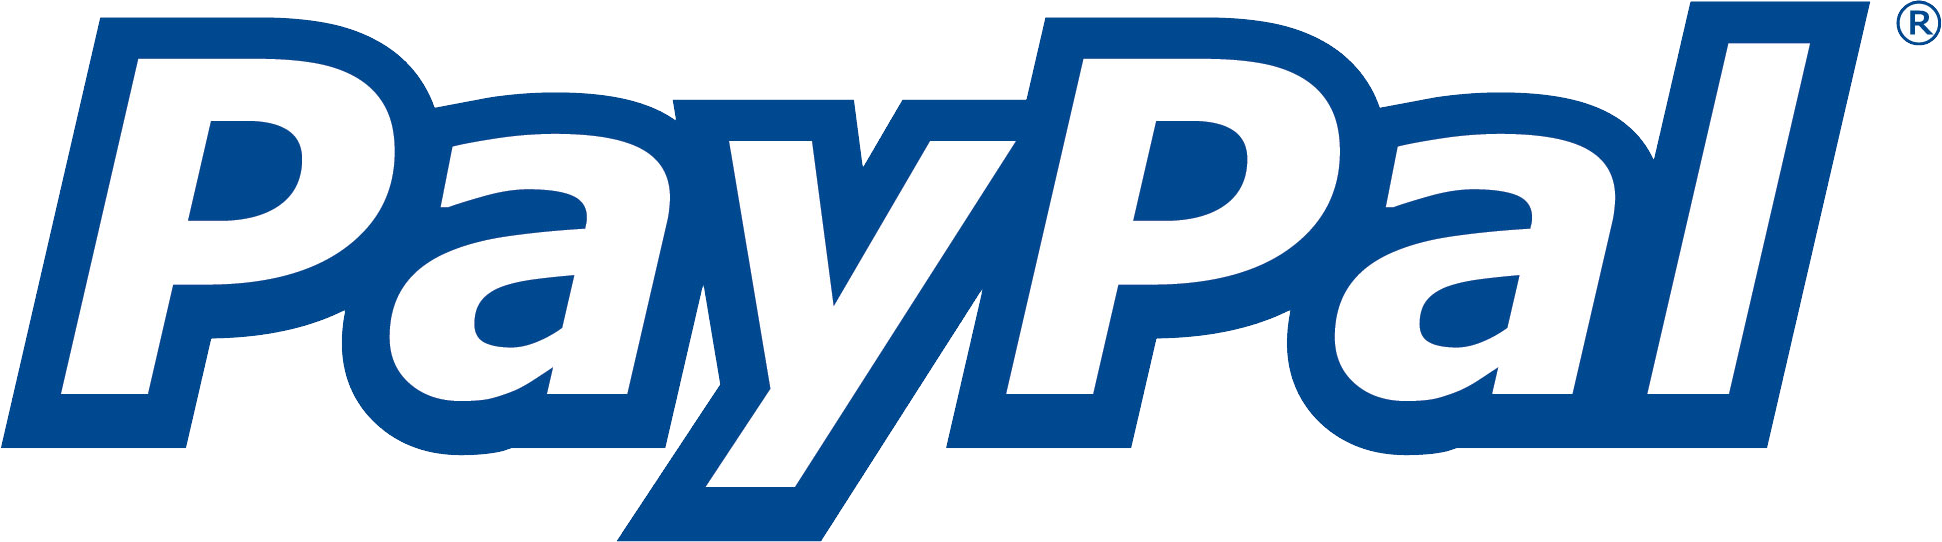 PayPal logo PNG image free Download 